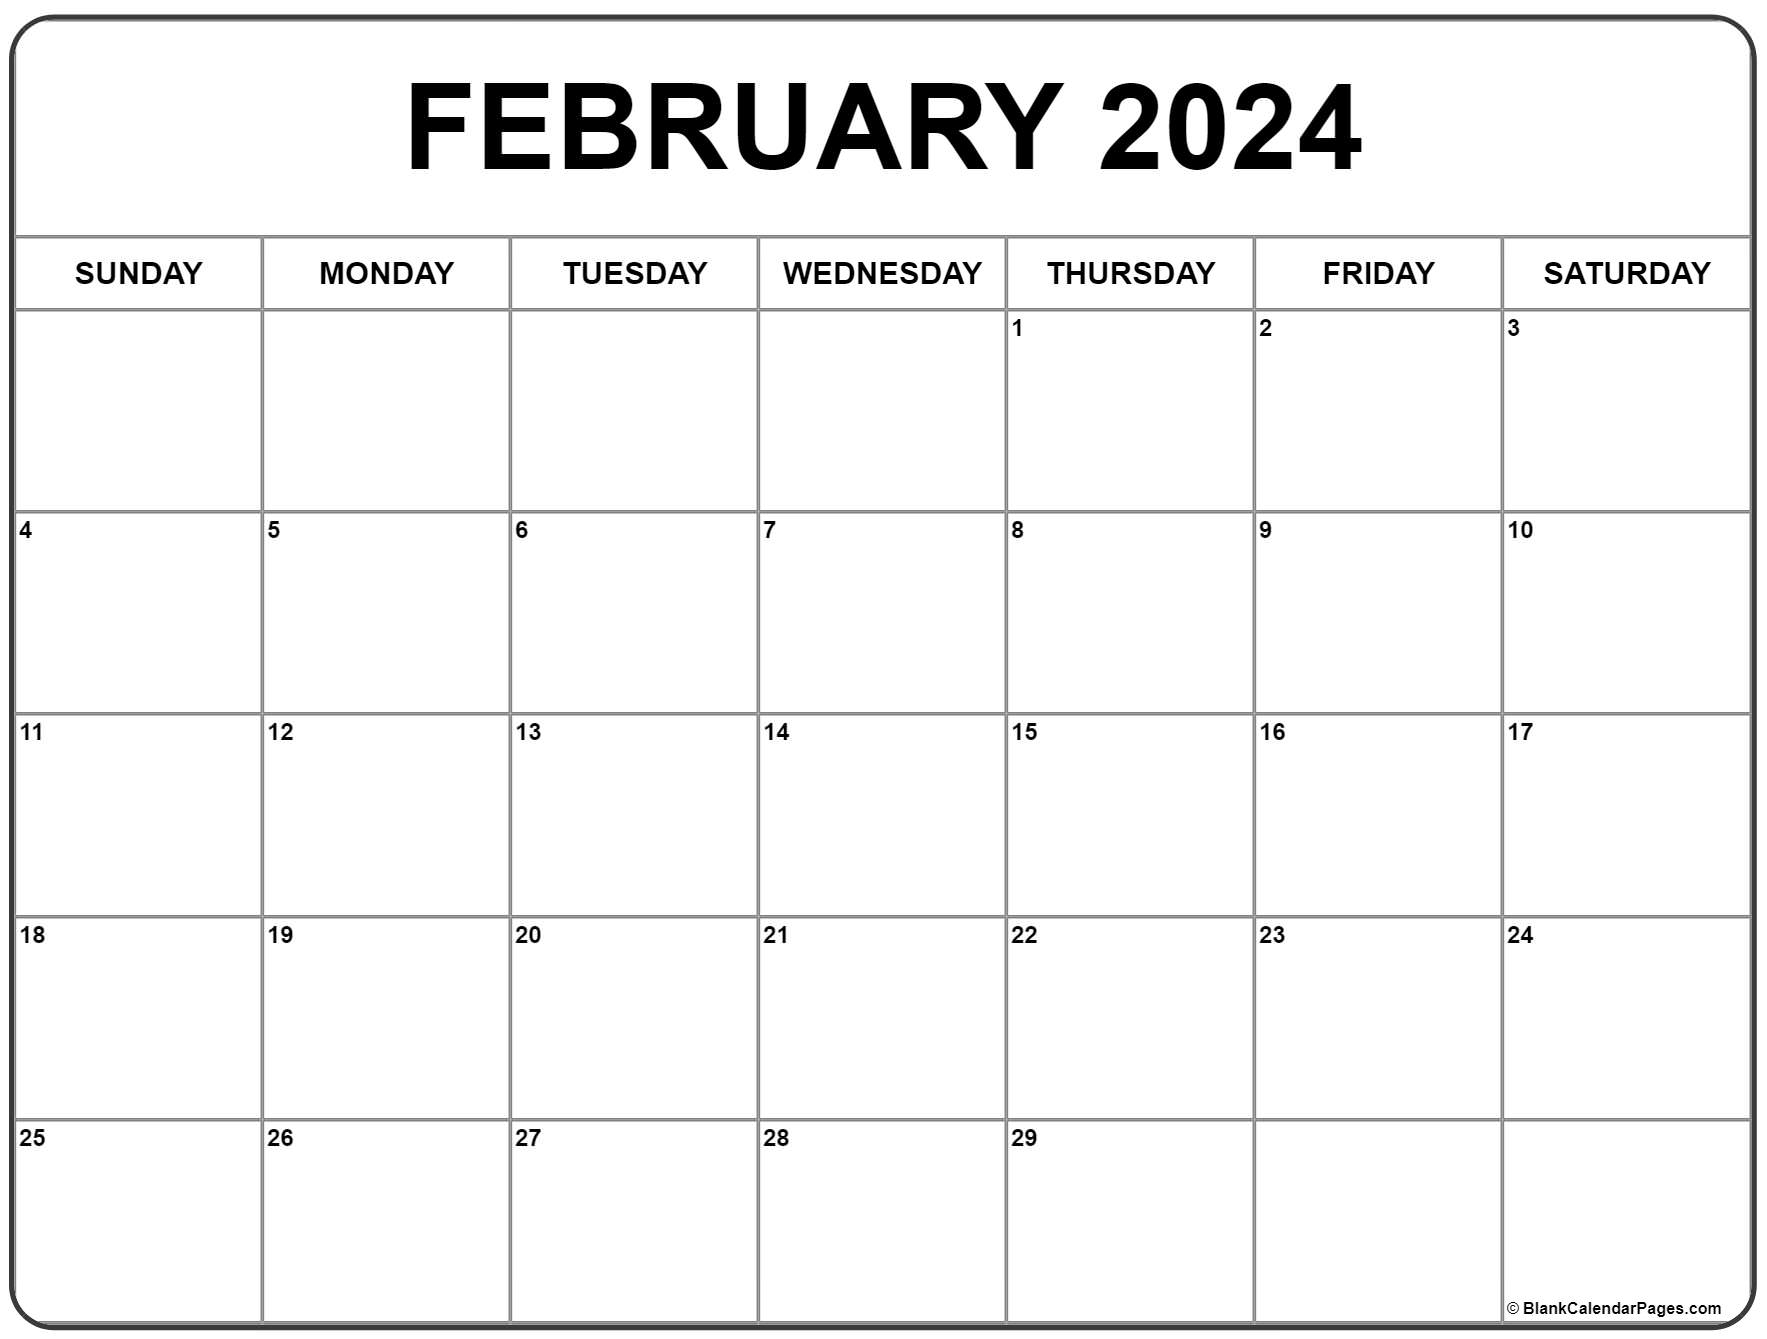 February 2024 Calendar | Free Printable Calendar for January And February 2024 Calendar Free Printable